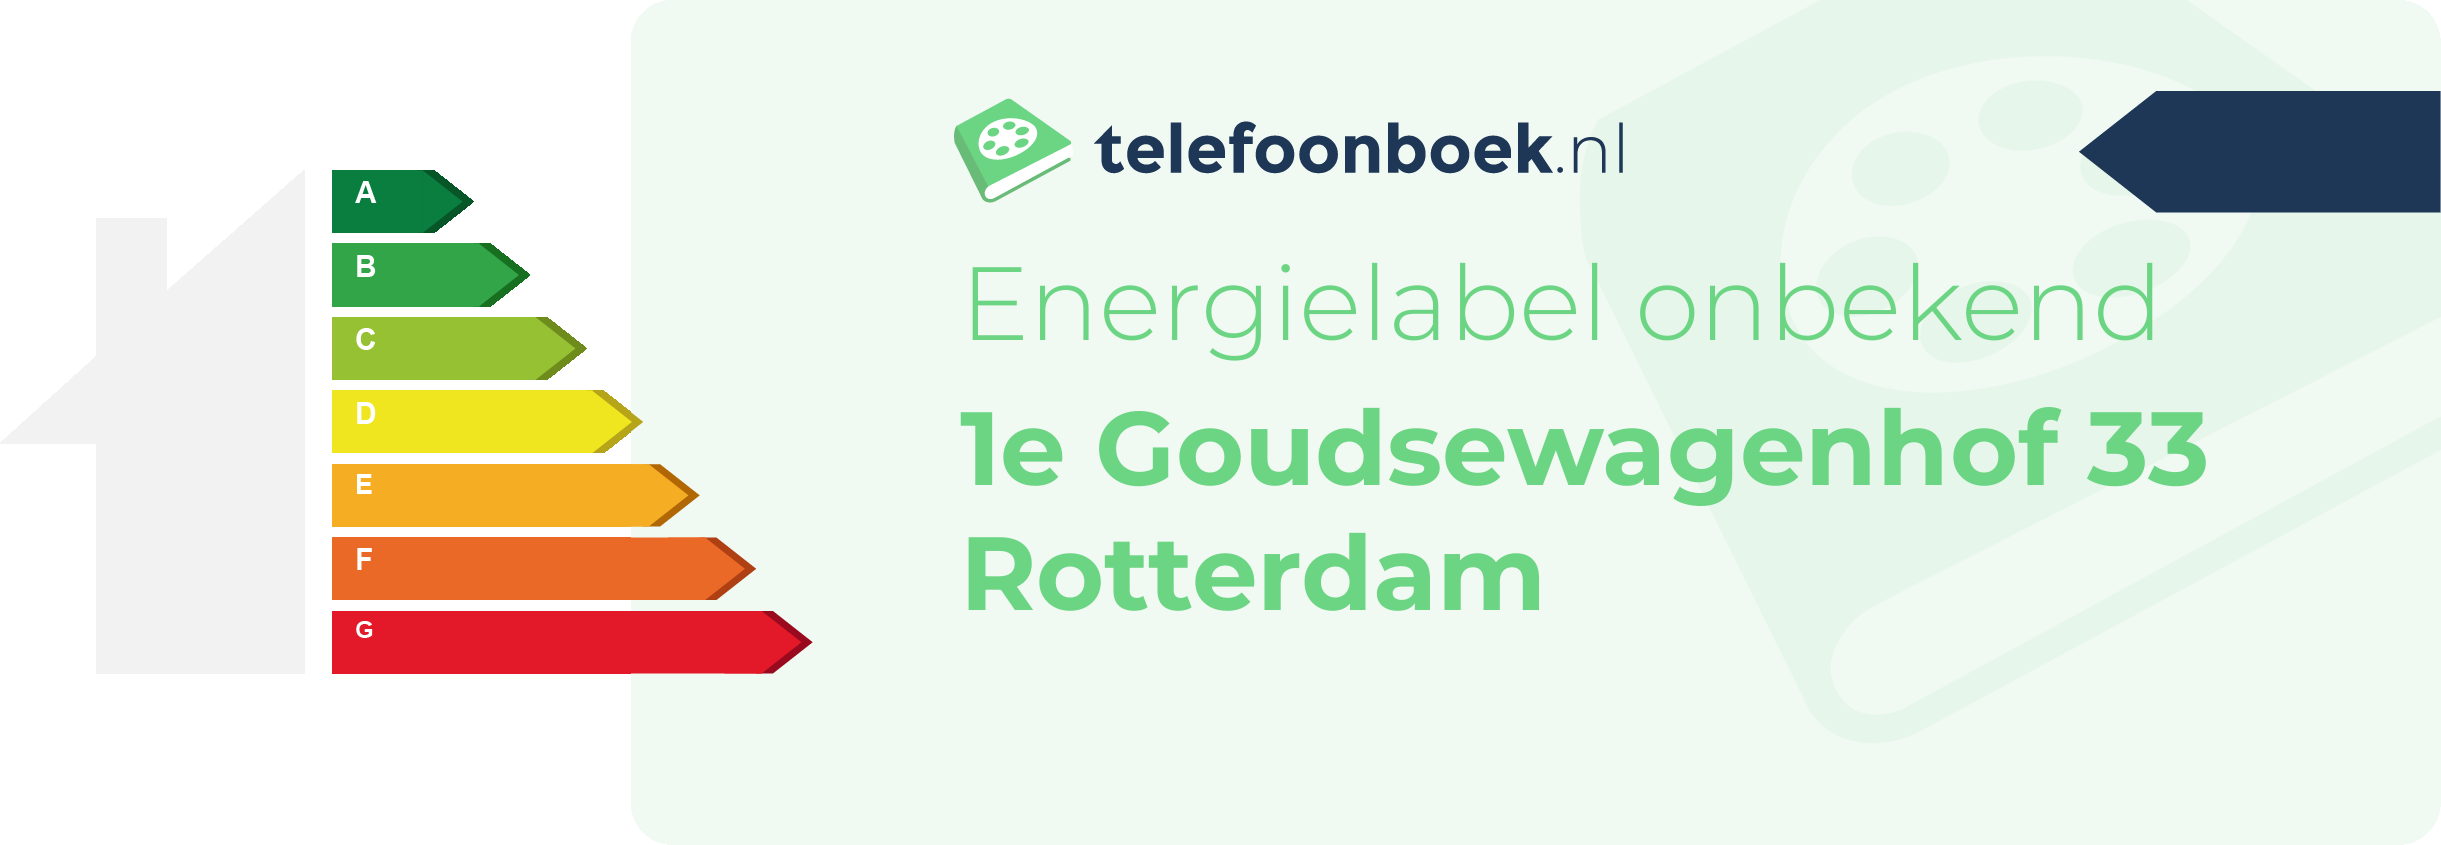 Energielabel 1e Goudsewagenhof 33 Rotterdam